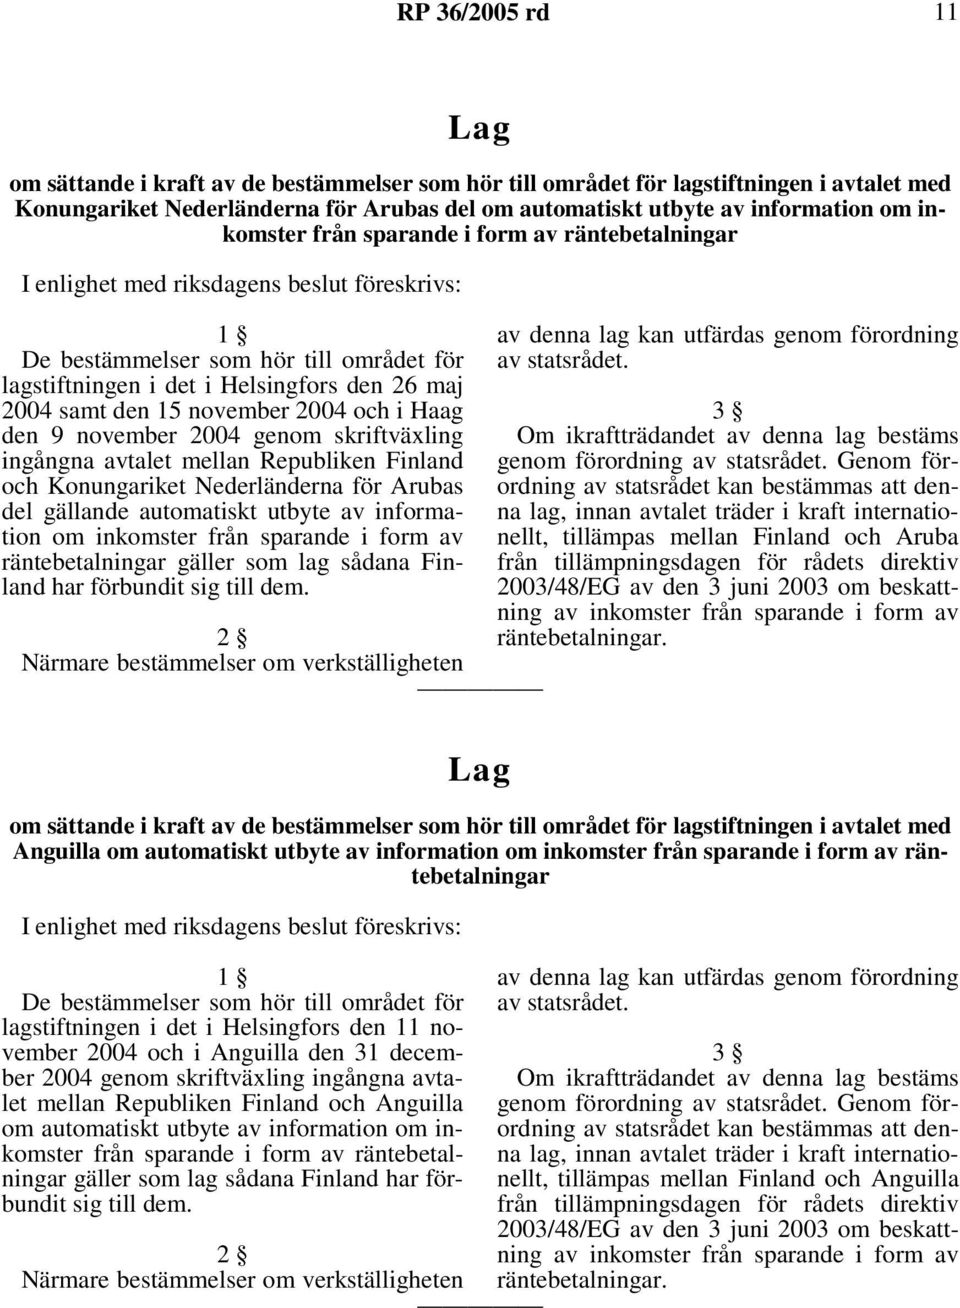 15 november 2004 och i Haag den 9 november 2004 genom skriftväxling ingångna avtalet mellan Republiken Finland och Konungariket Nederländerna för Arubas del gällande automatiskt utbyte av information